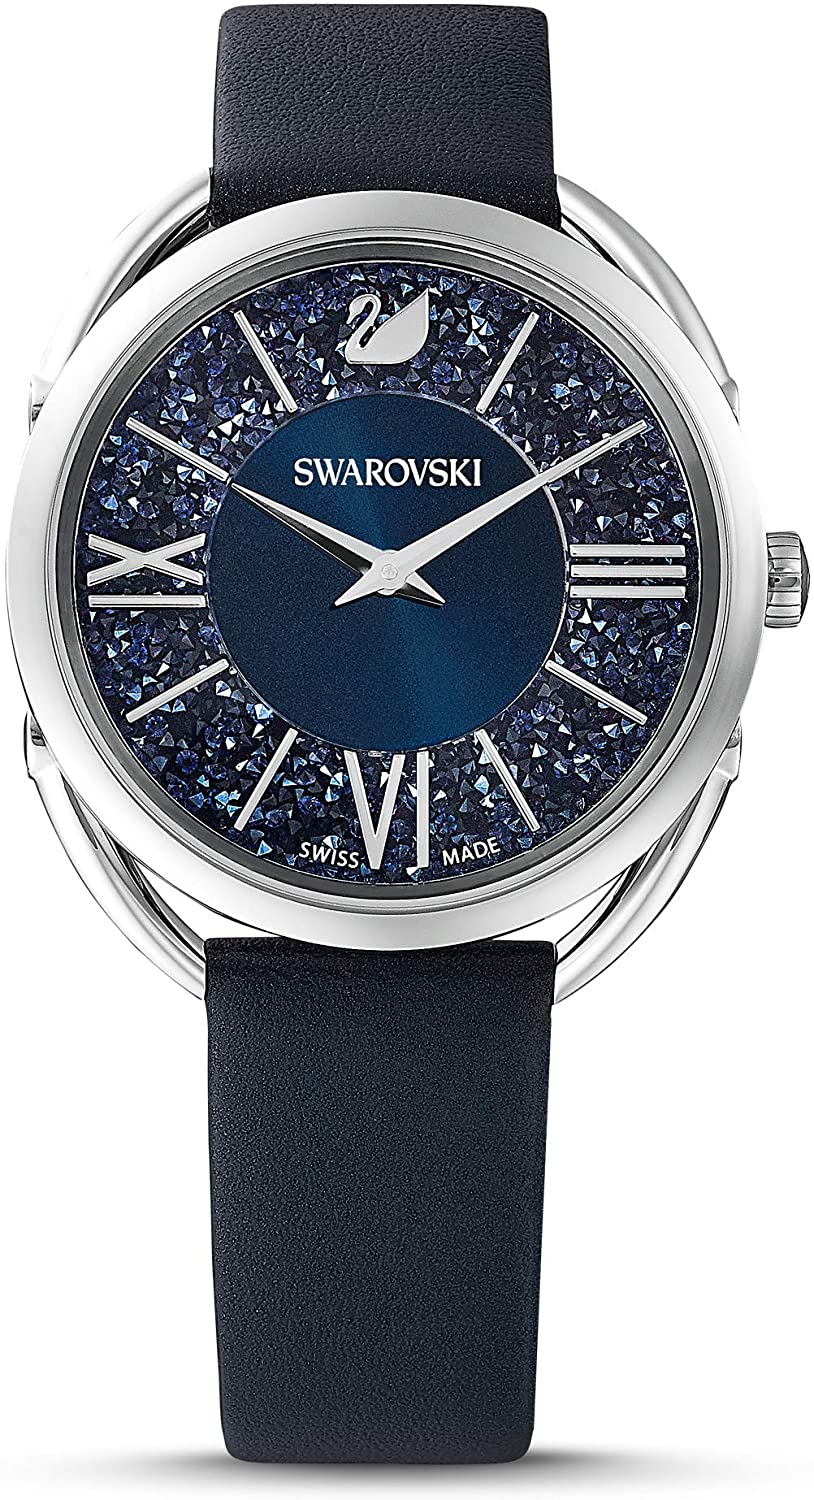 腕時計 レディース ブラック シンプル スワロフスキー CRYSTALLINE GLAM クリスタルライン グラム SWAROVSKI 5537961